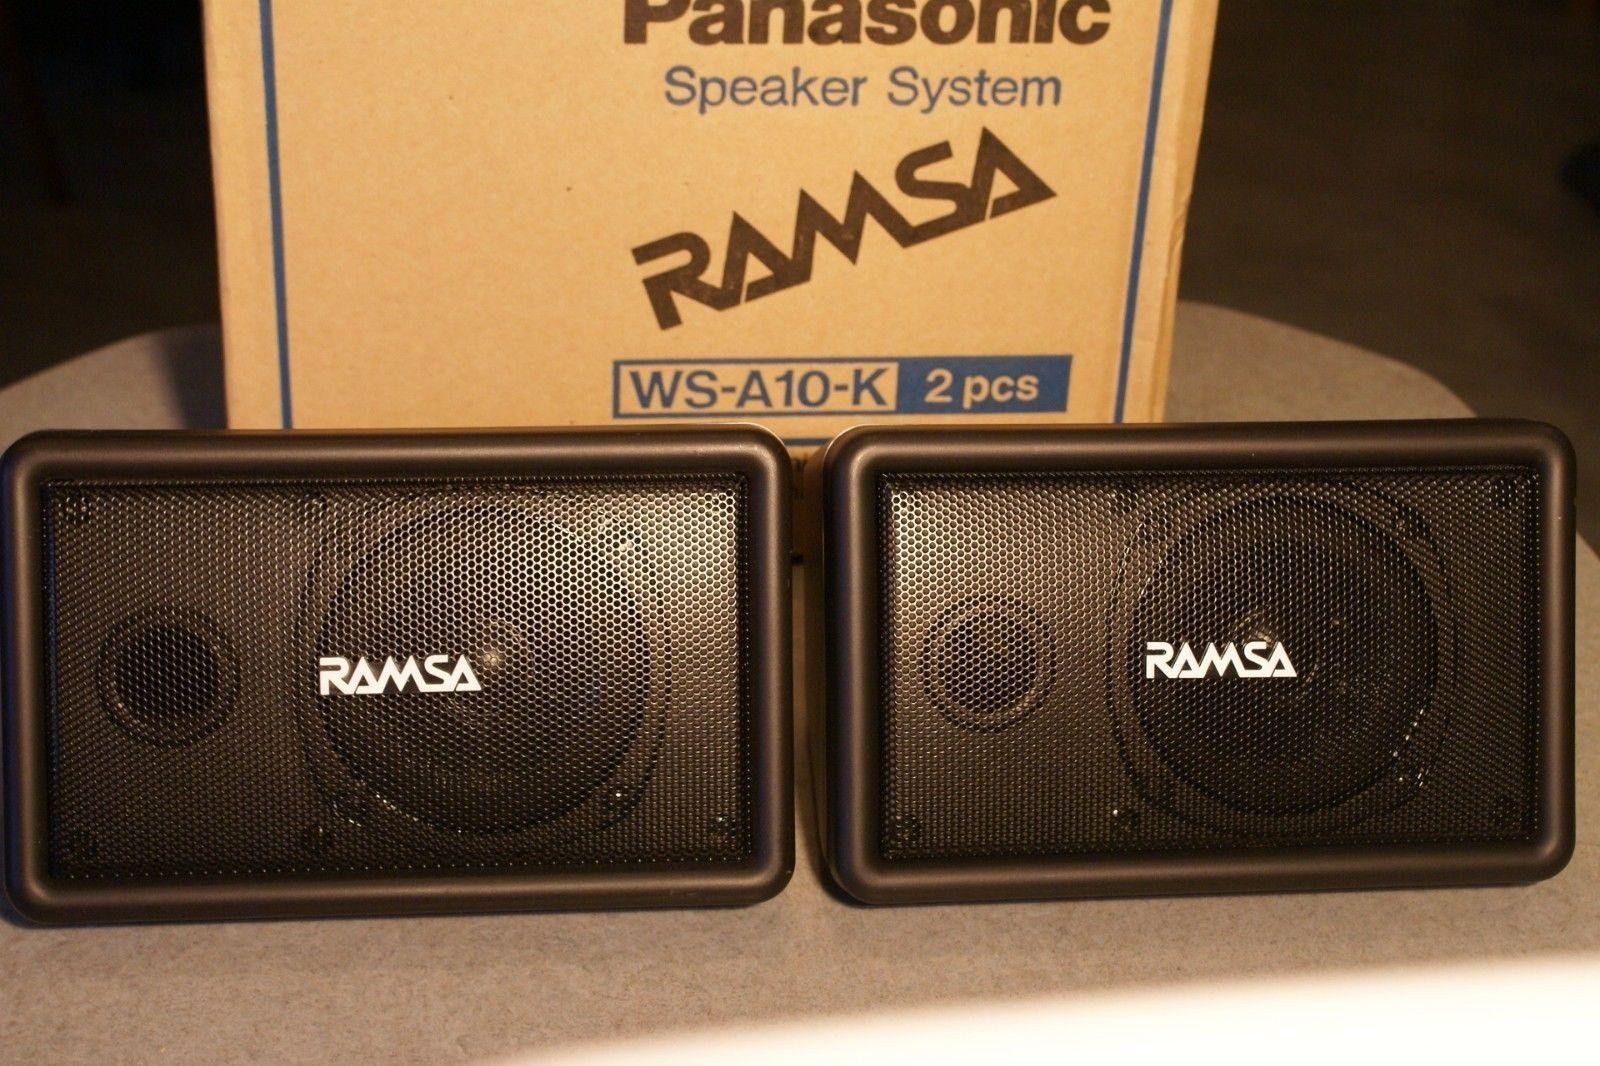 Ramsa pro audio speakers